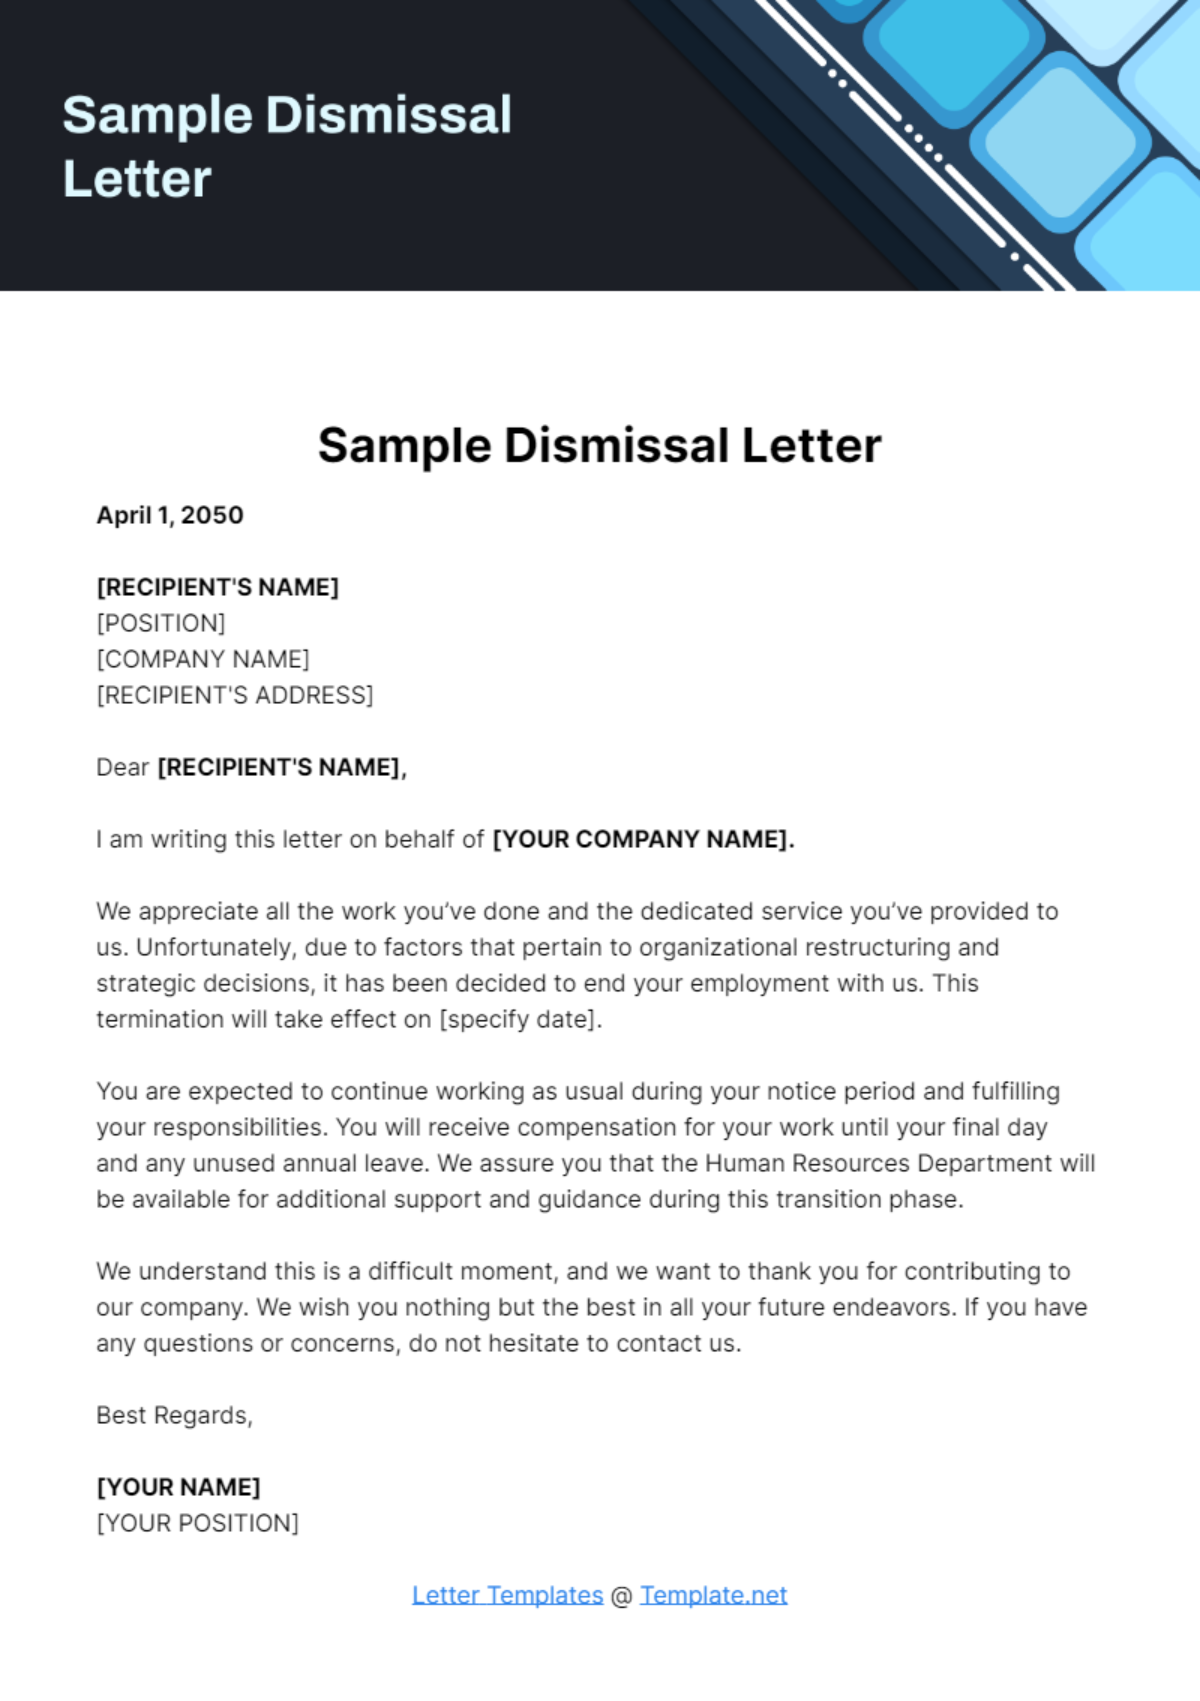 Sample Dismissal Letter Template